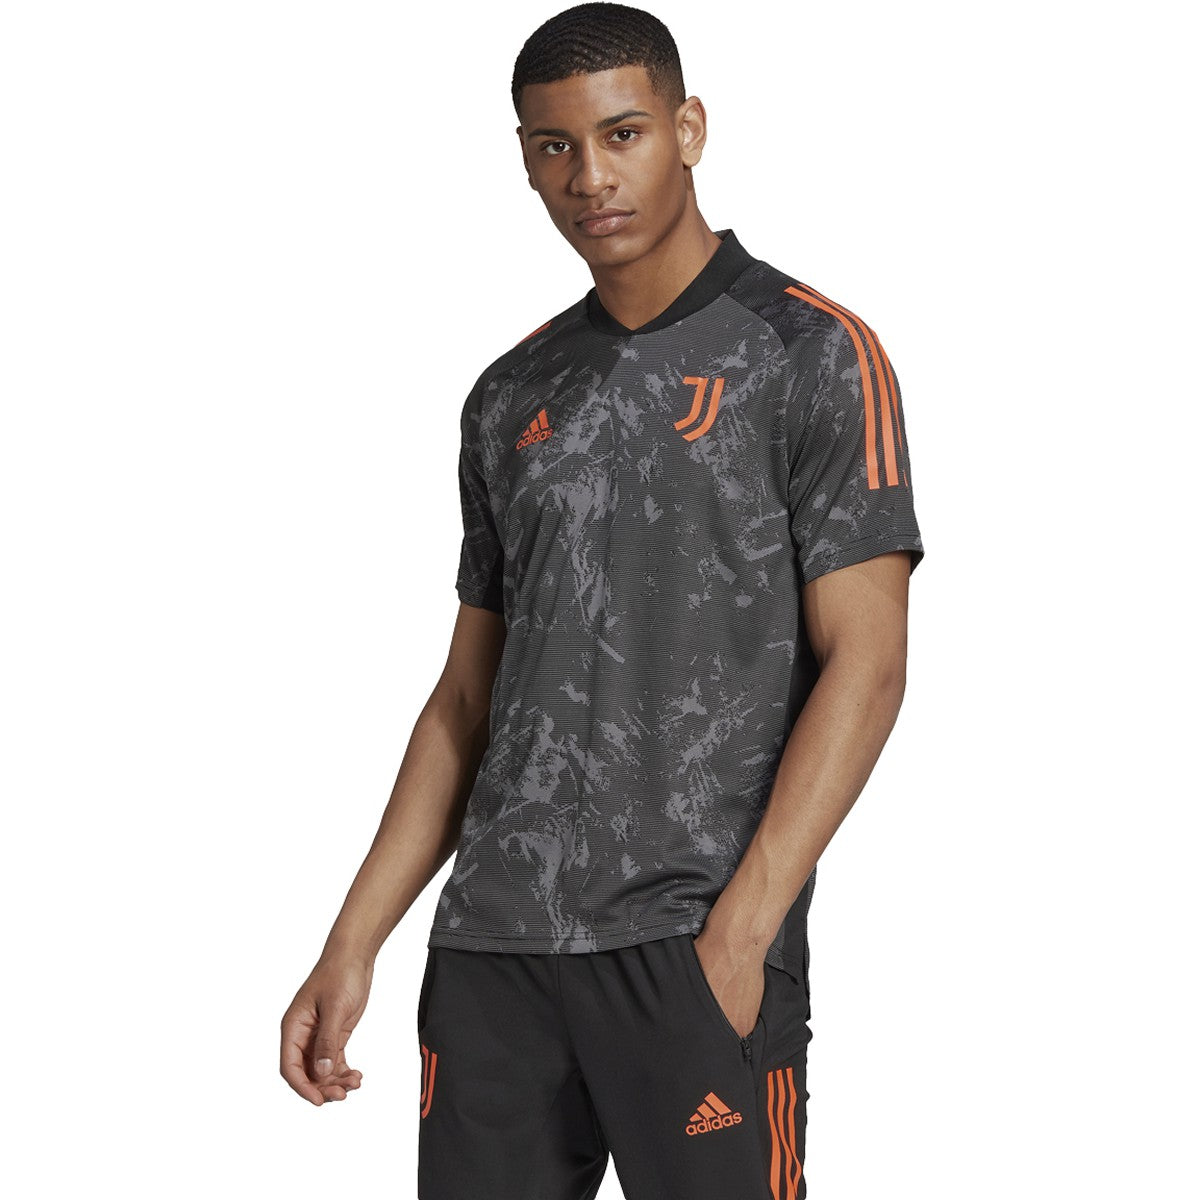 Adidas 2020-21 Juventus European Training Jersey - Black-Orange